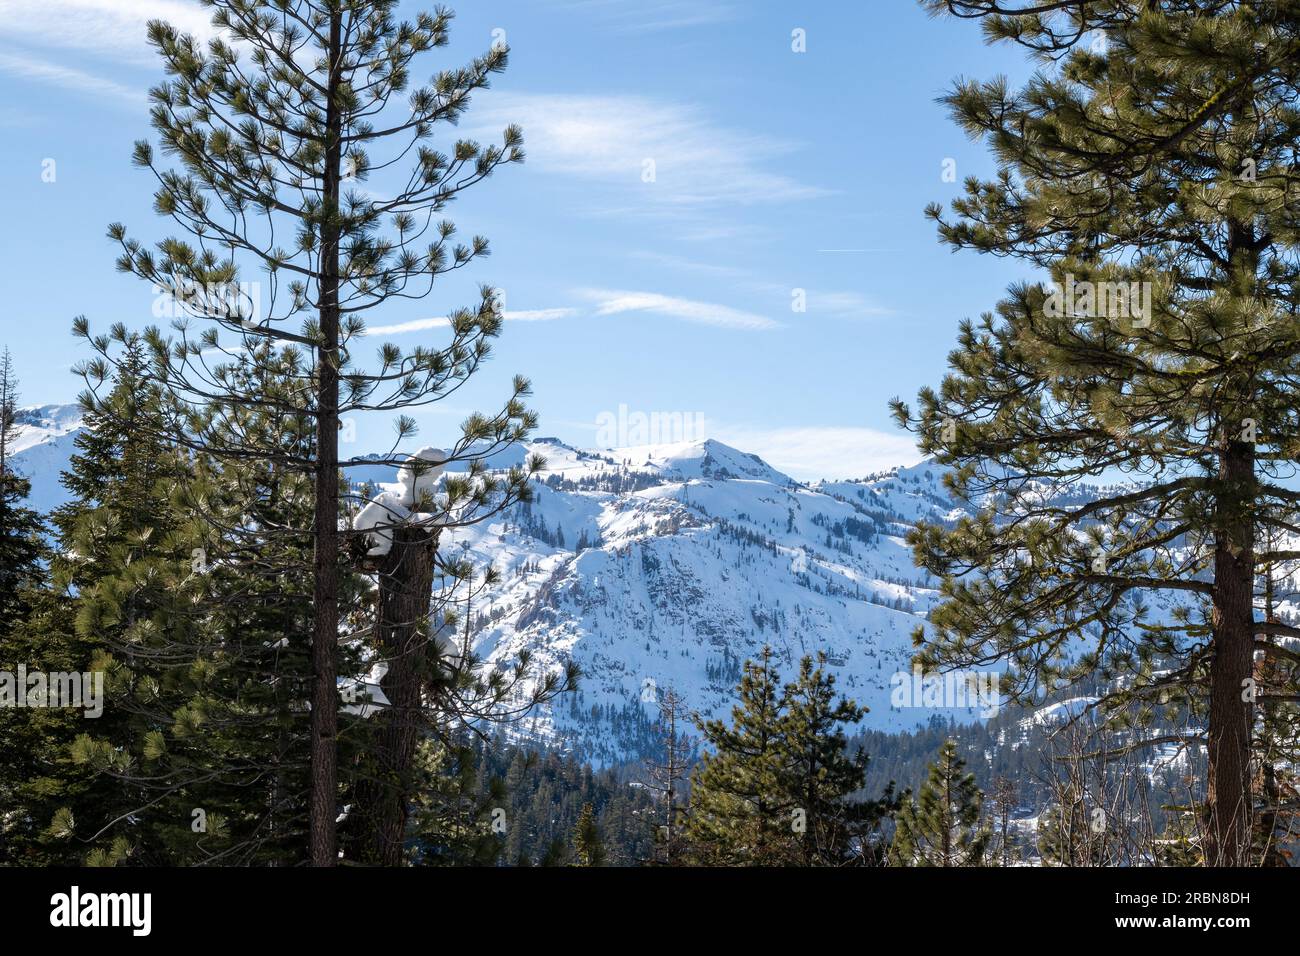 Vista delle montagne della Squaw Valley a distanza, in una giornata di cielo blu soleggiato, da tra gli alberi di pino della sierra nevada californiana in Wint Foto Stock